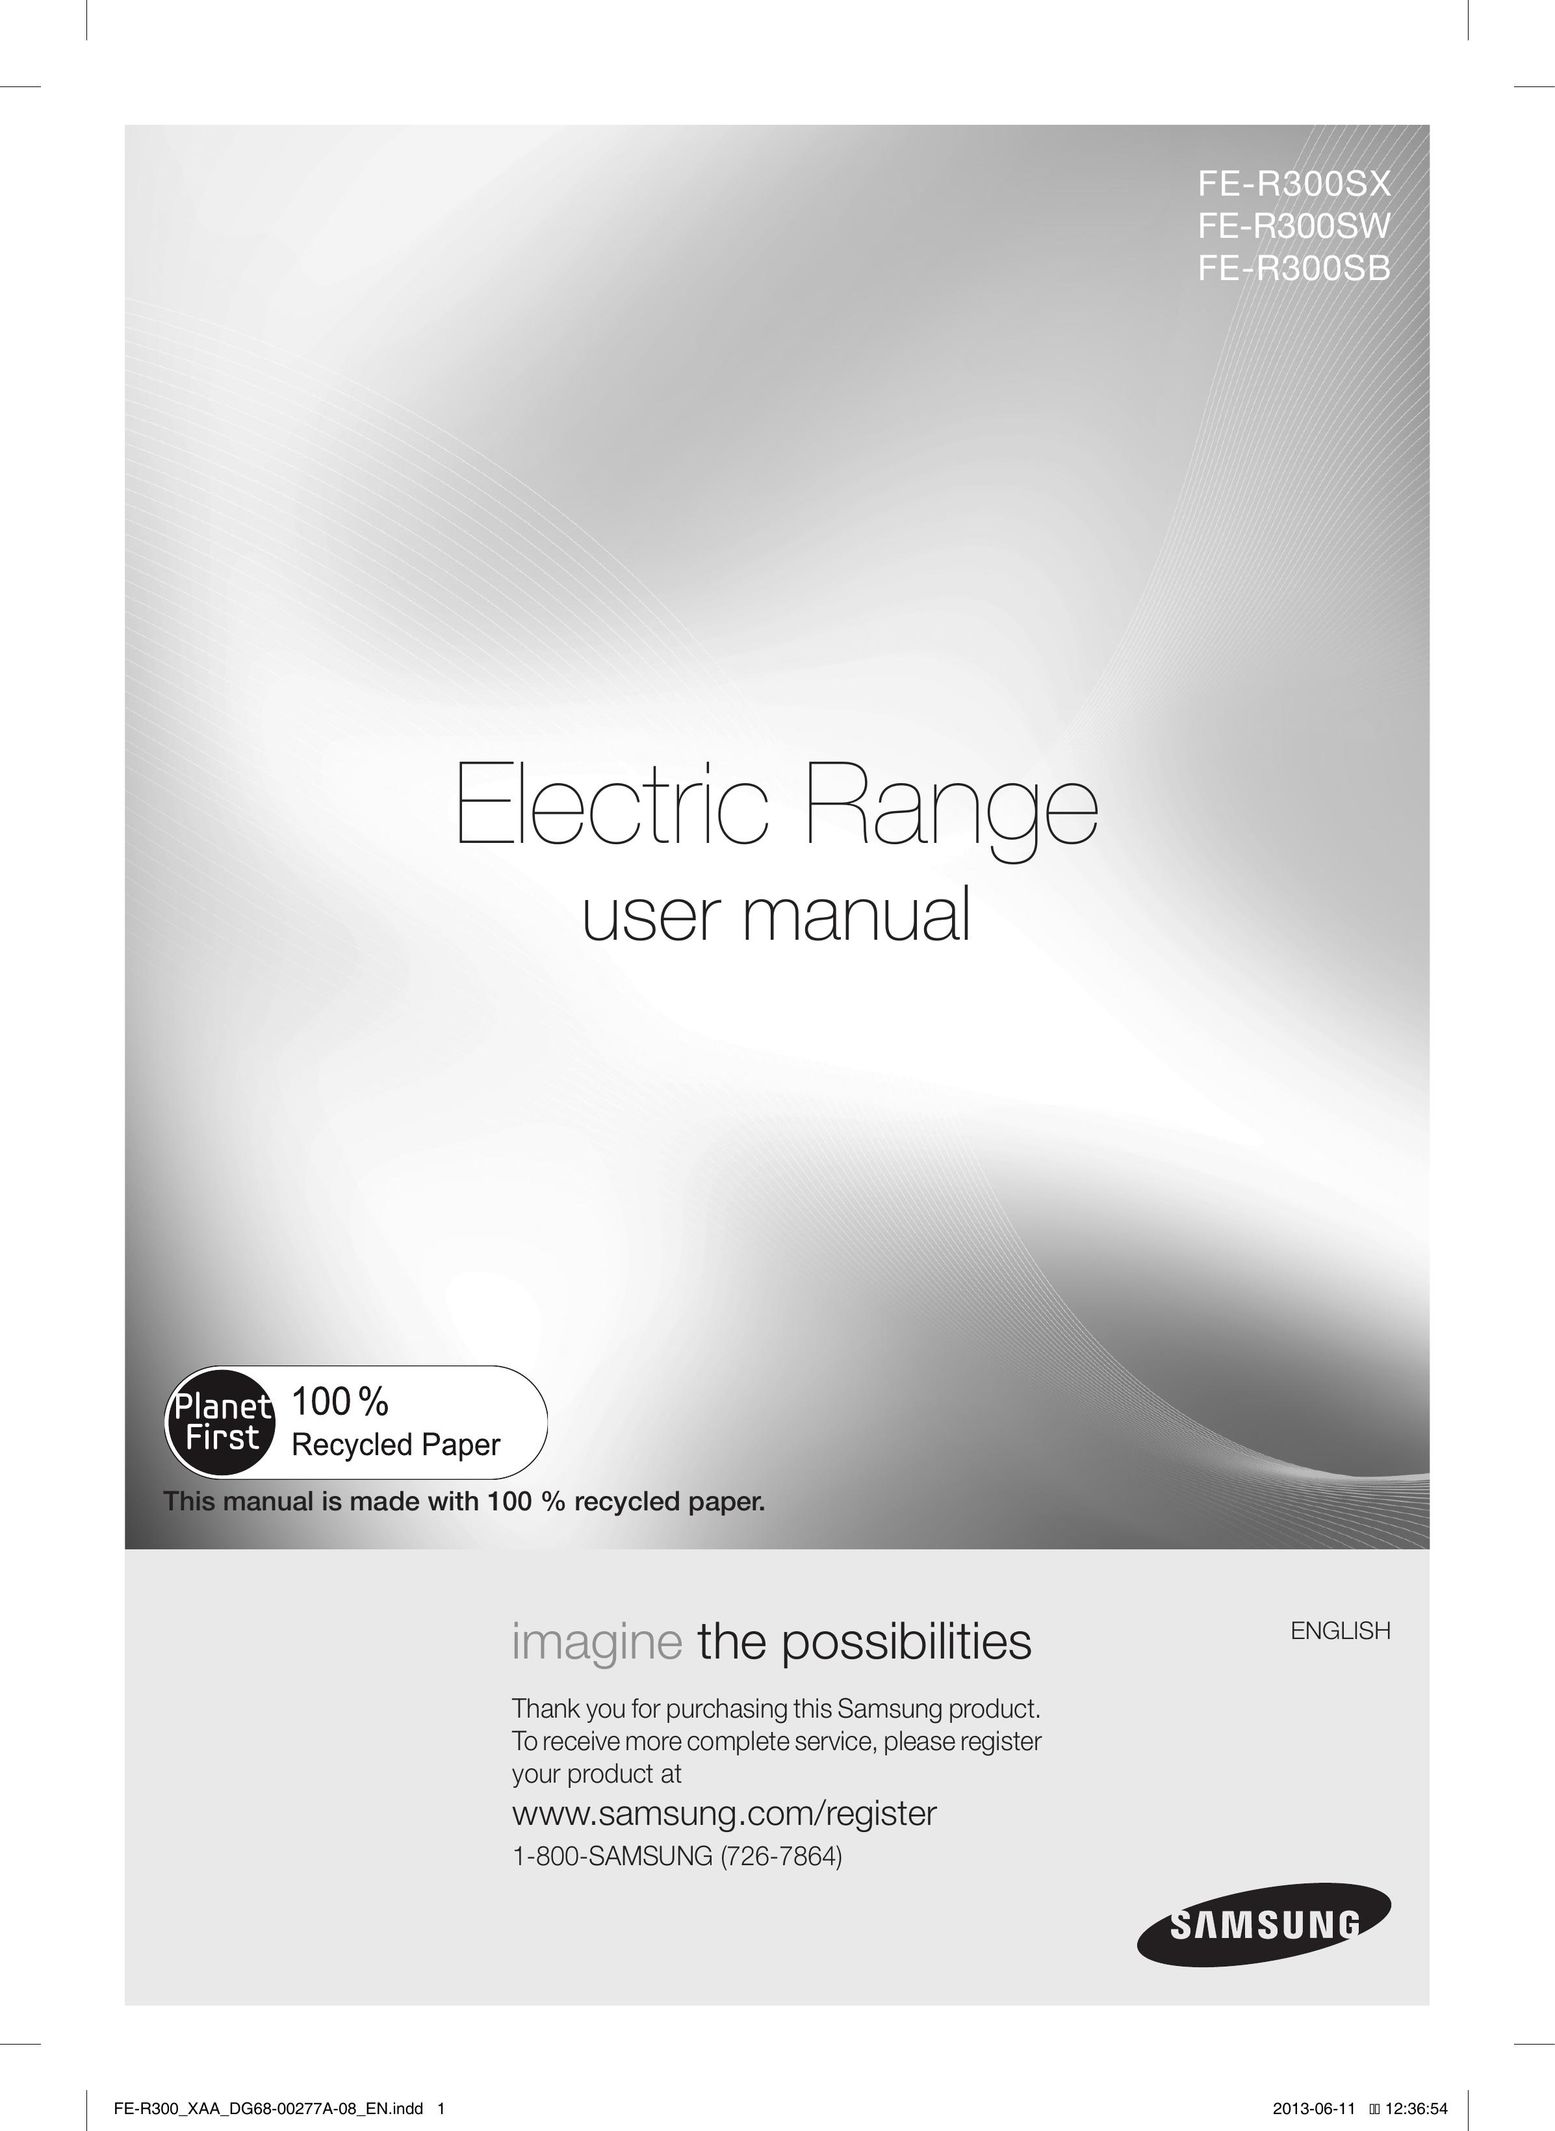 Samsung FER300SWPKG Range User Manual